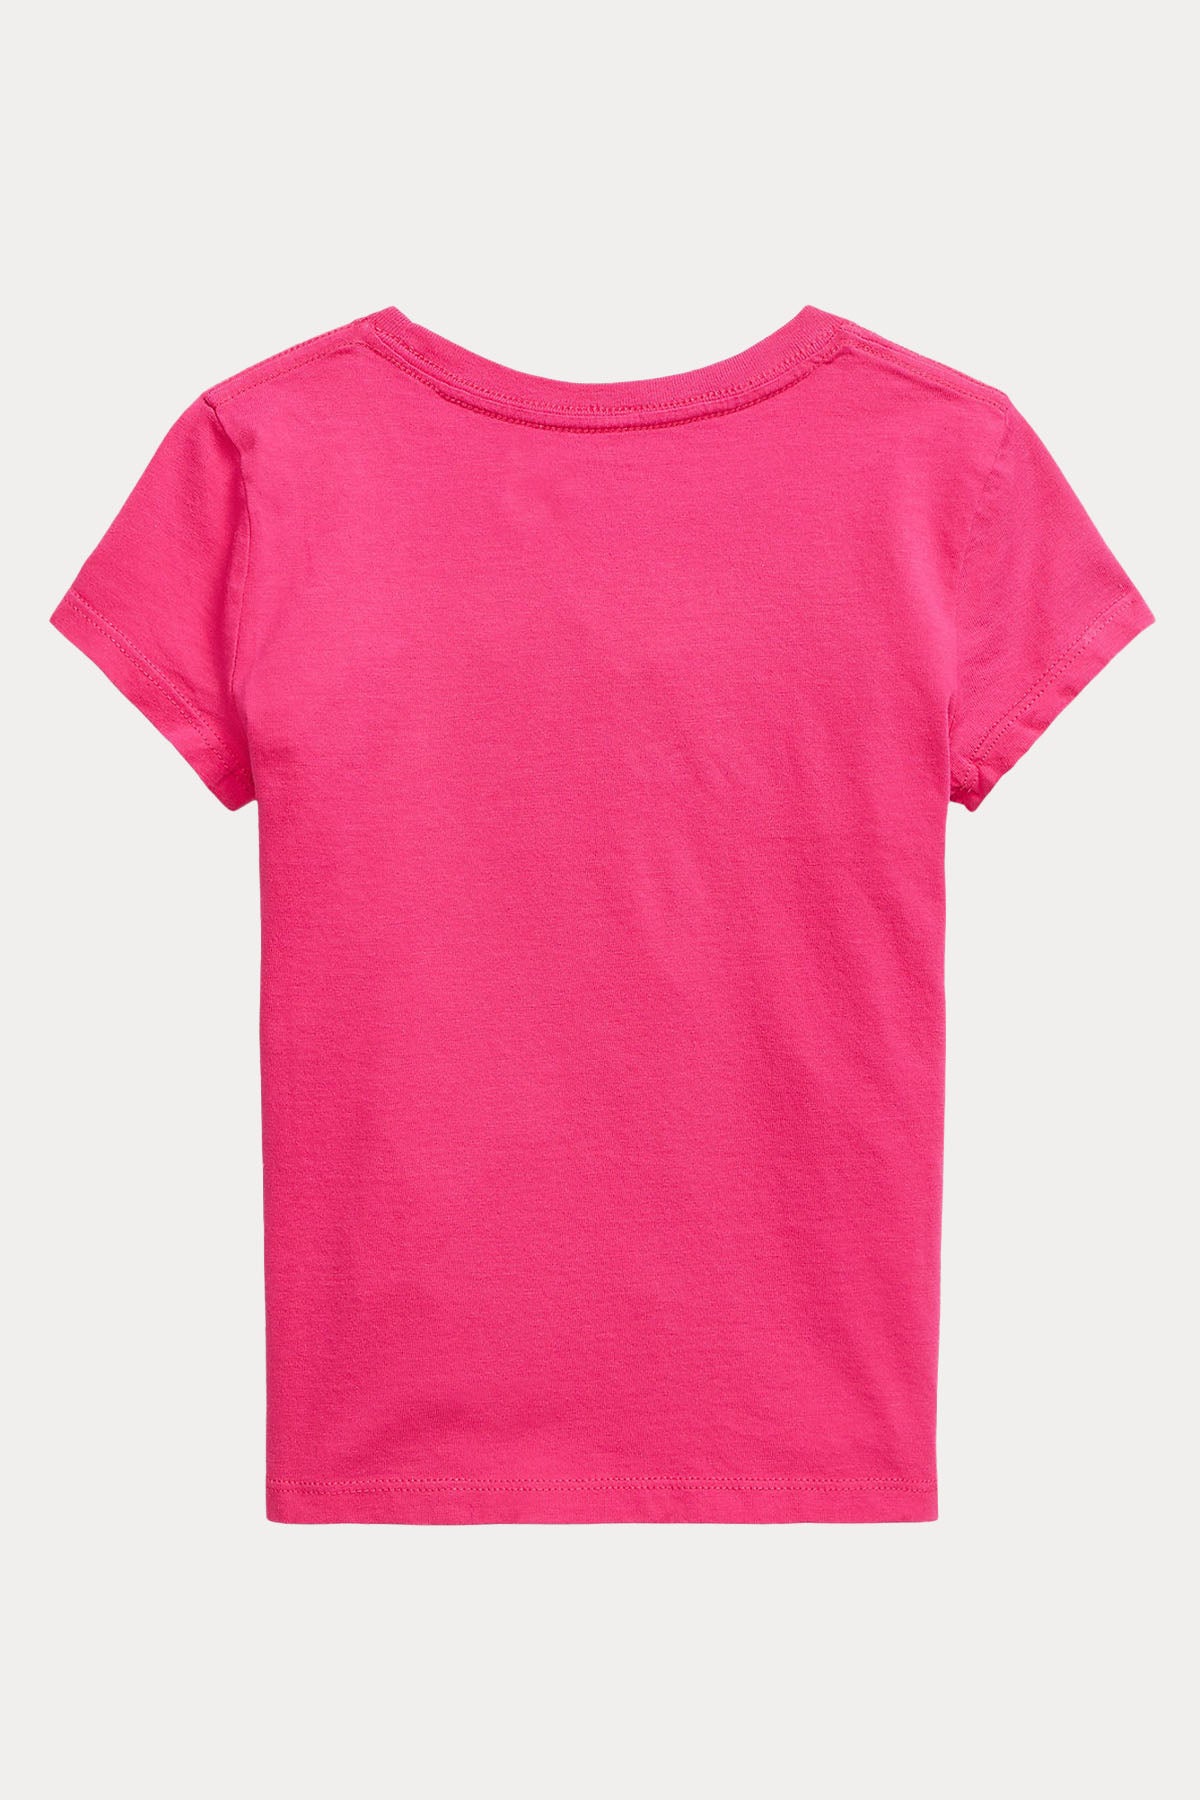 Polo Ralph Lauren Kids 2-3 Yaş Kız Çocuk Logolu T-shirt-Libas Trendy Fashion Store